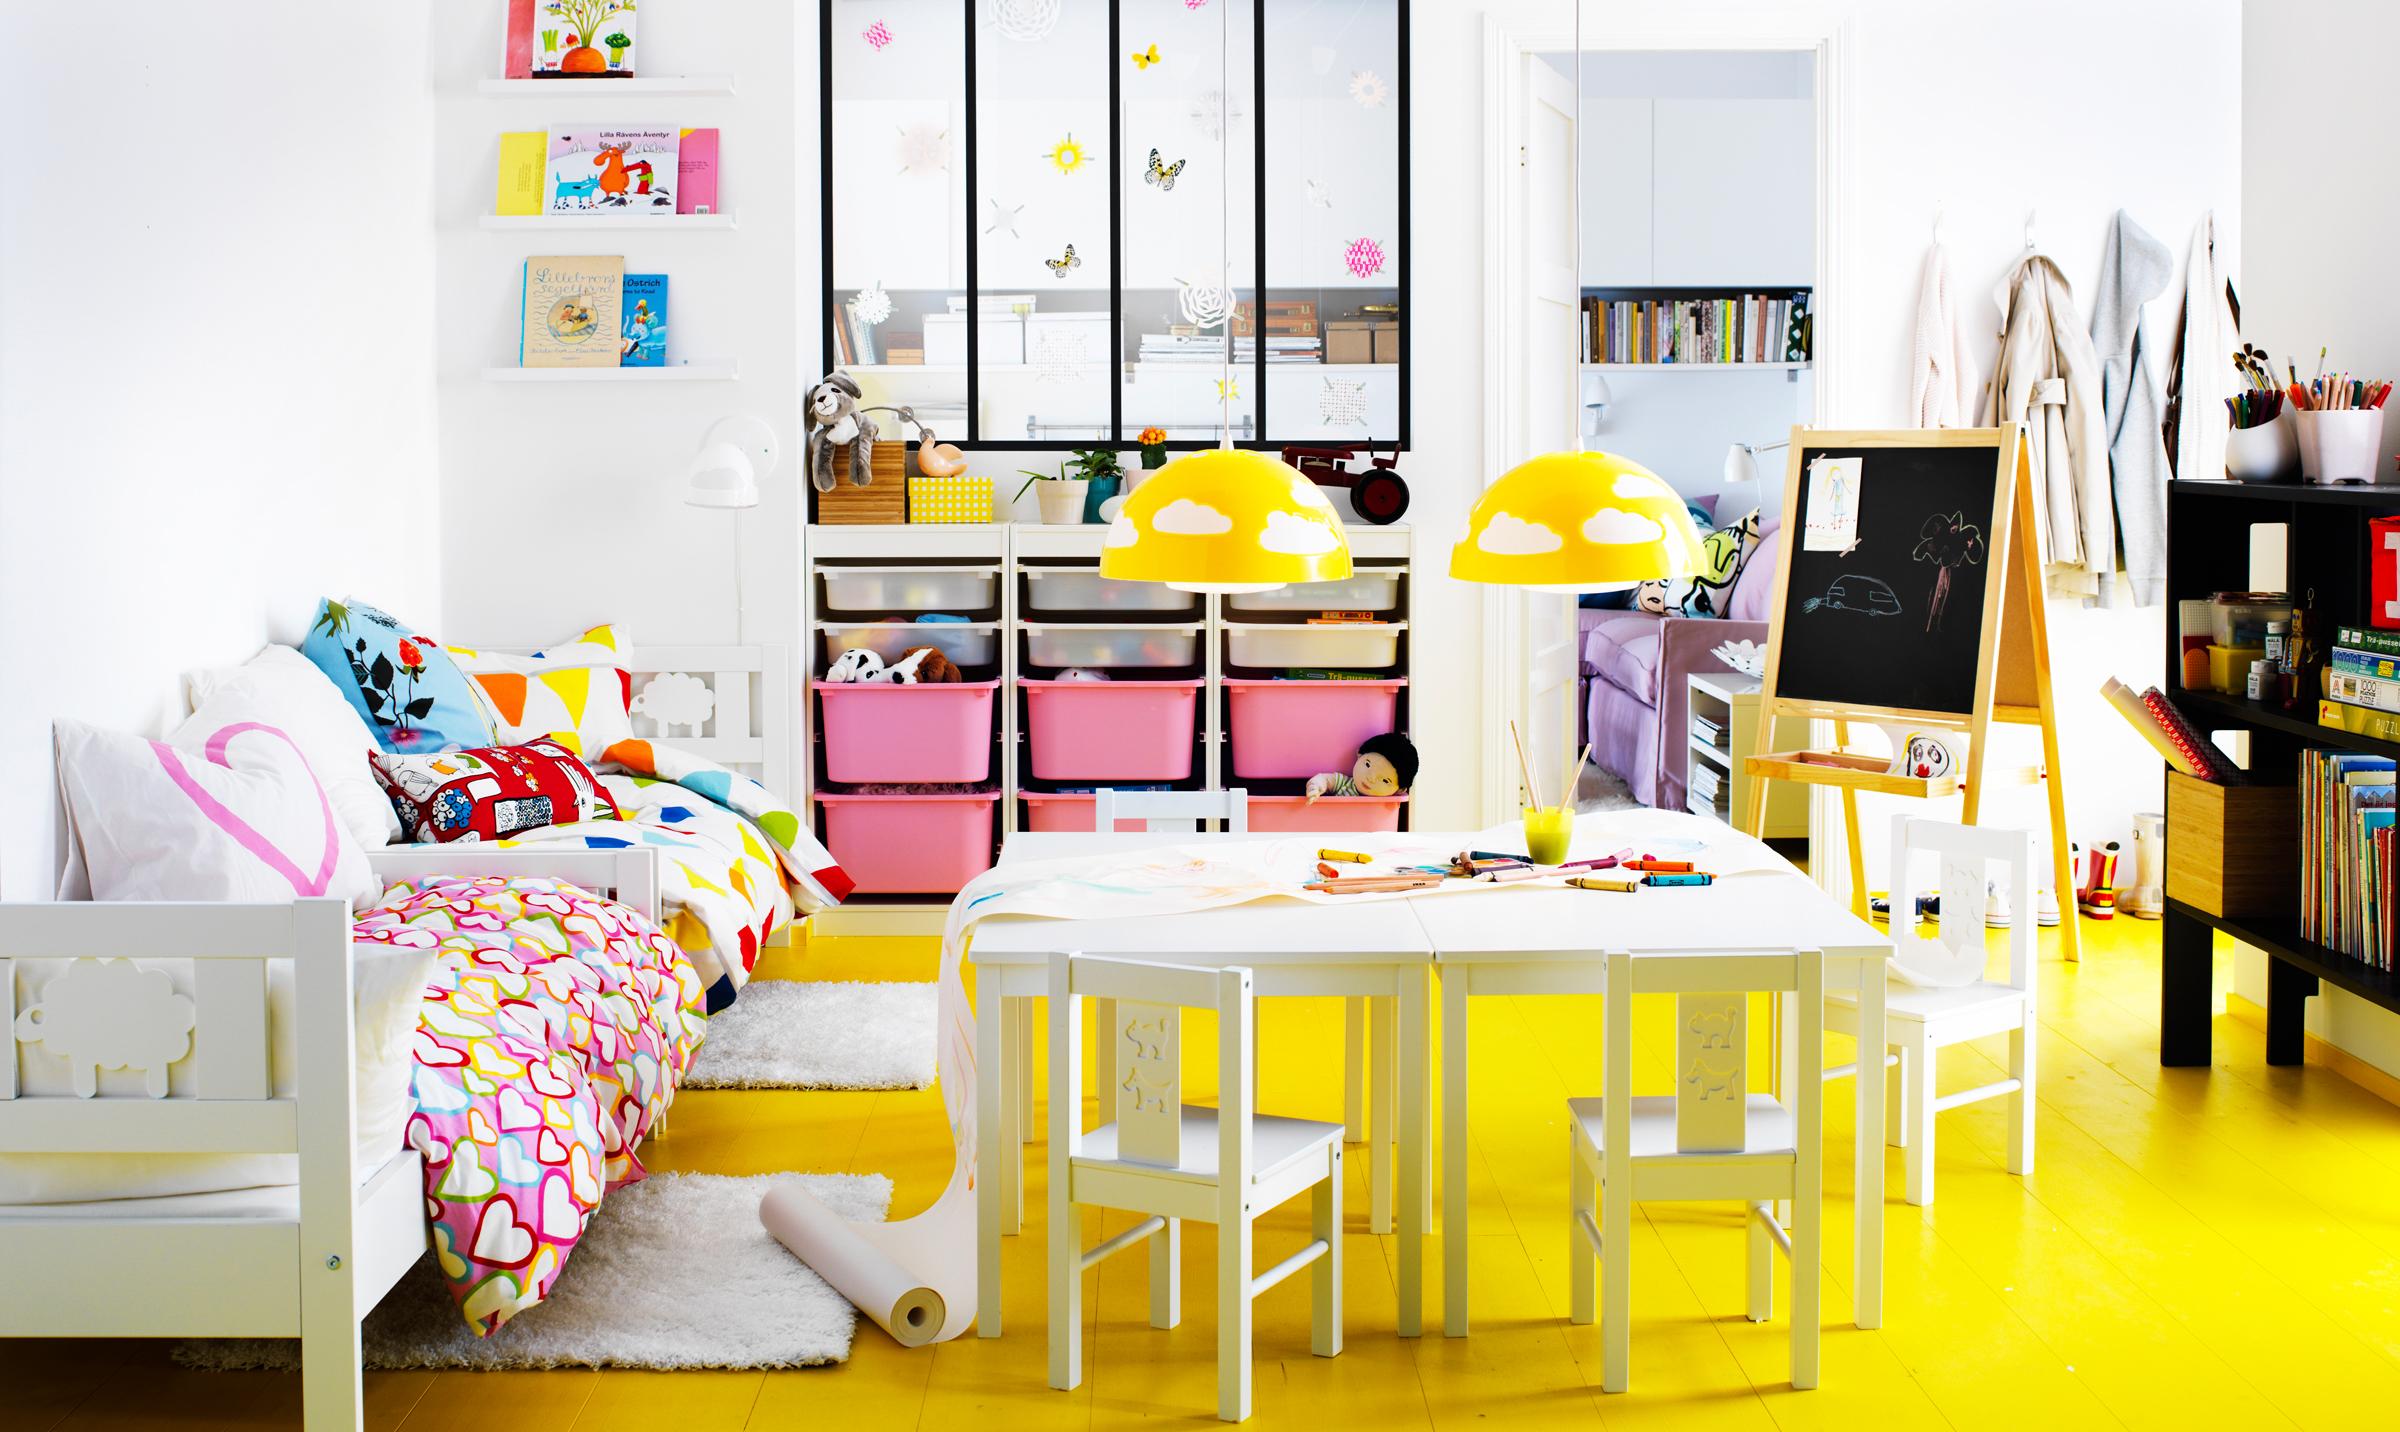 Schranksystem mit Schubladen und gelbe Hängeleuchten im Kinderzimmer #ikea ©Inter IKEA Systems B.V